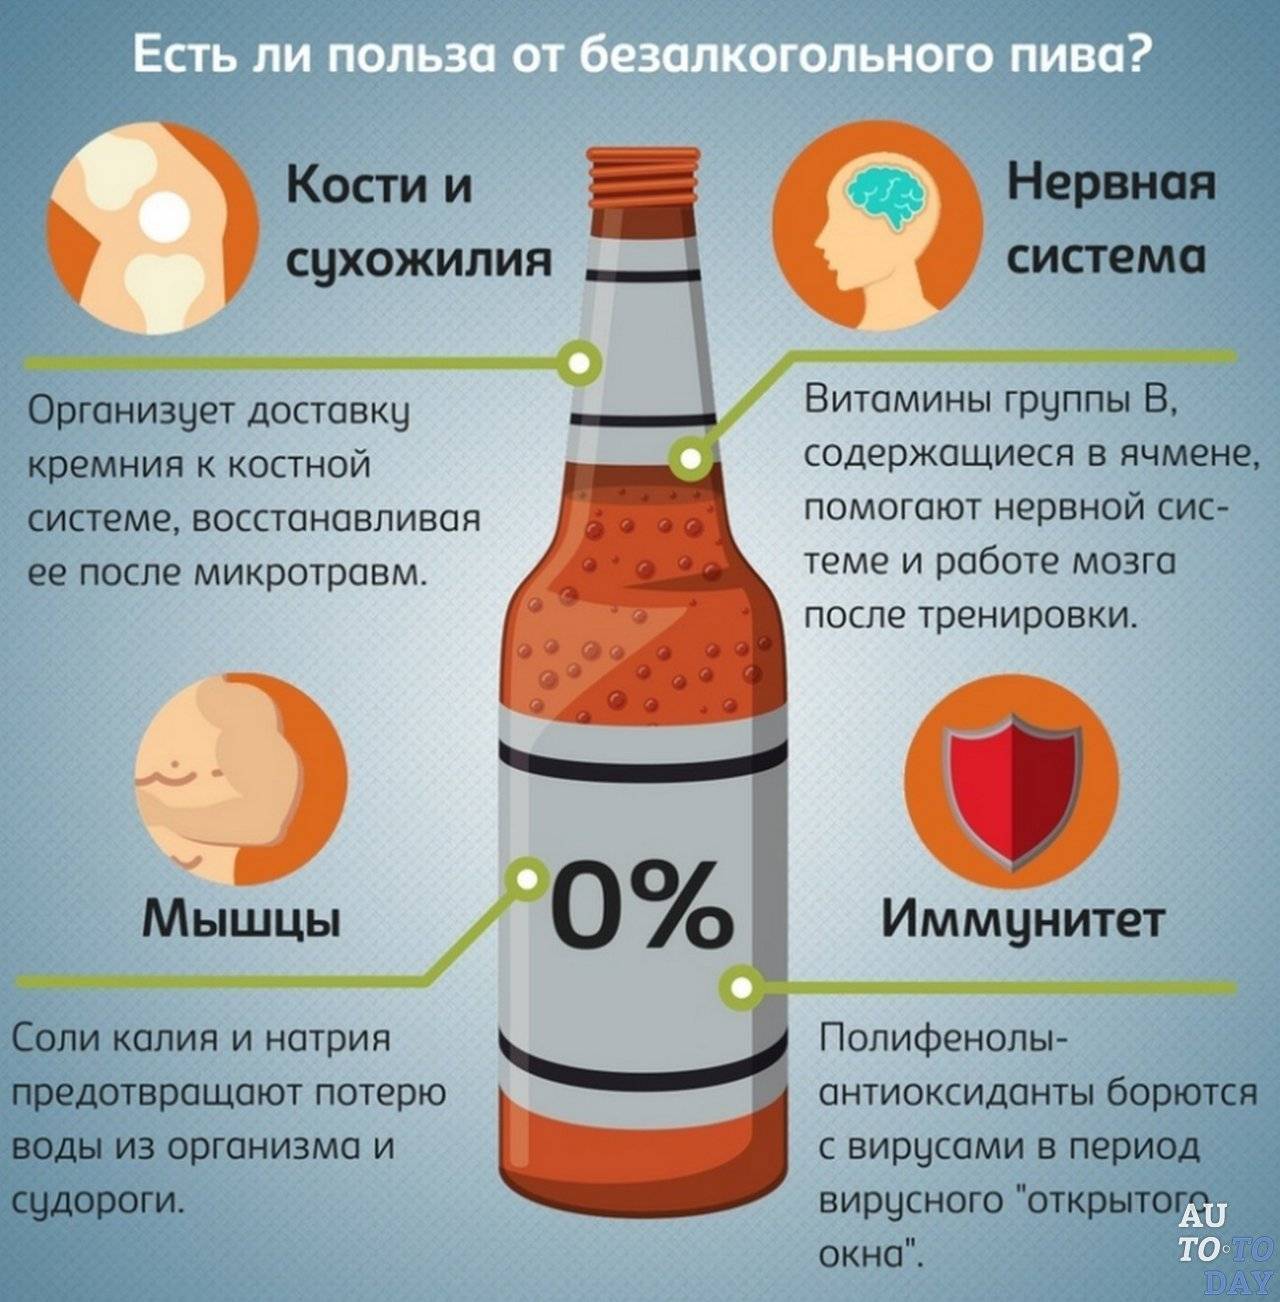 Вред пива для мужчин: влияние пива на мужской организм и потенцию